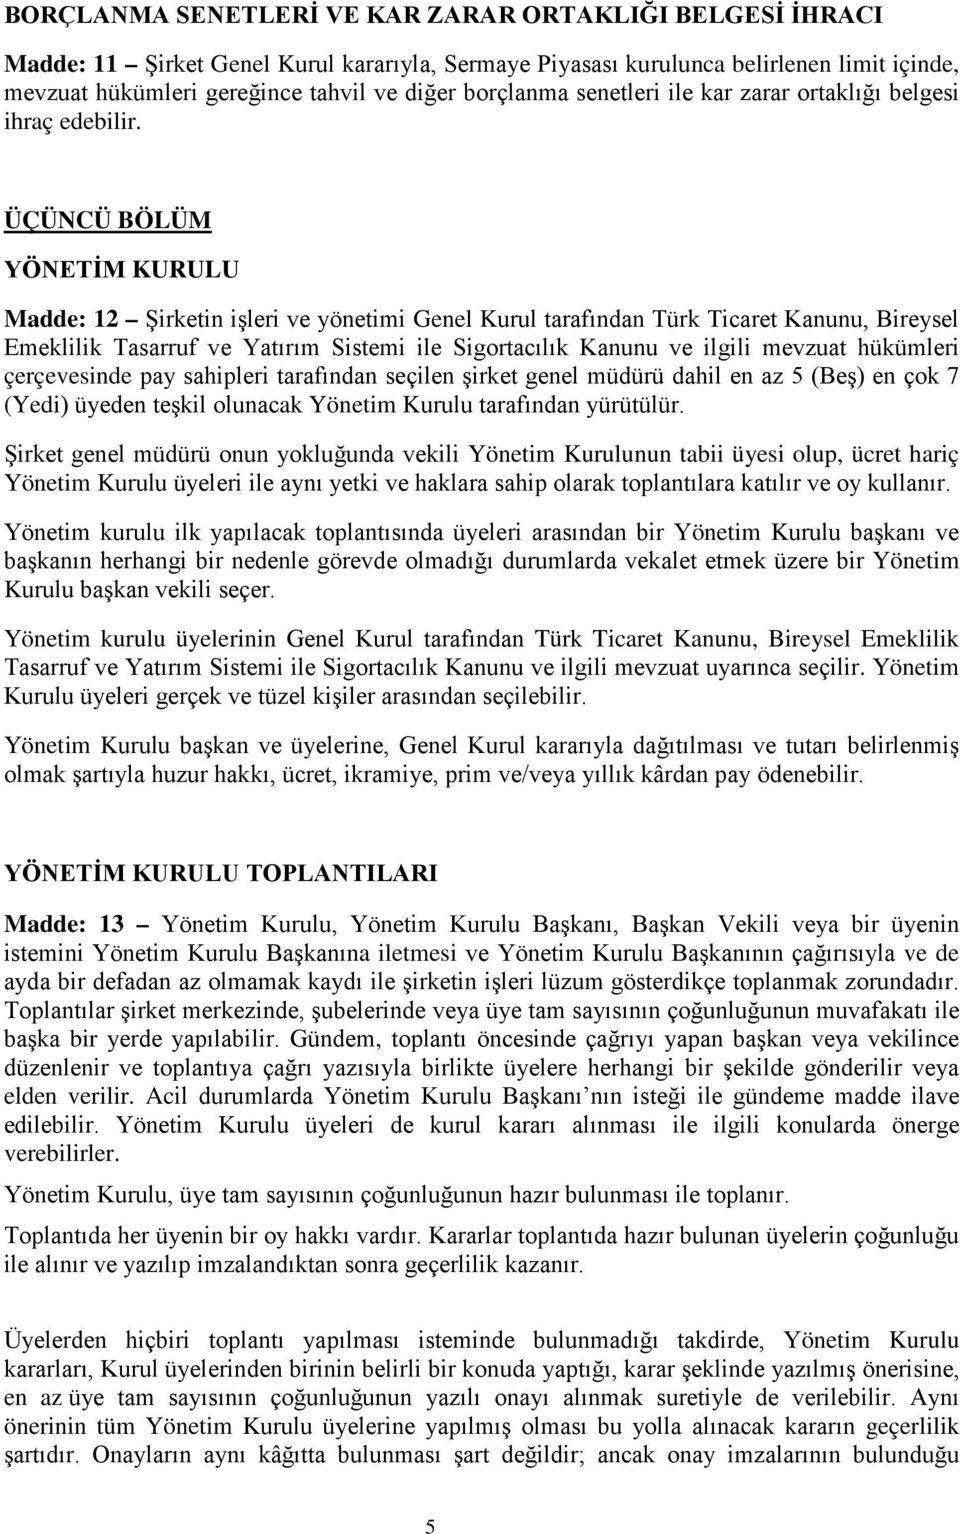 ÜÇÜNCÜ BÖLÜM YÖNETİM KURULU Madde: 12 Şirketin işleri ve yönetimi Genel Kurul tarafından Türk Ticaret Kanunu, Bireysel Emeklilik Tasarruf ve Yatırım Sistemi ile Sigortacılık Kanunu ve ilgili mevzuat